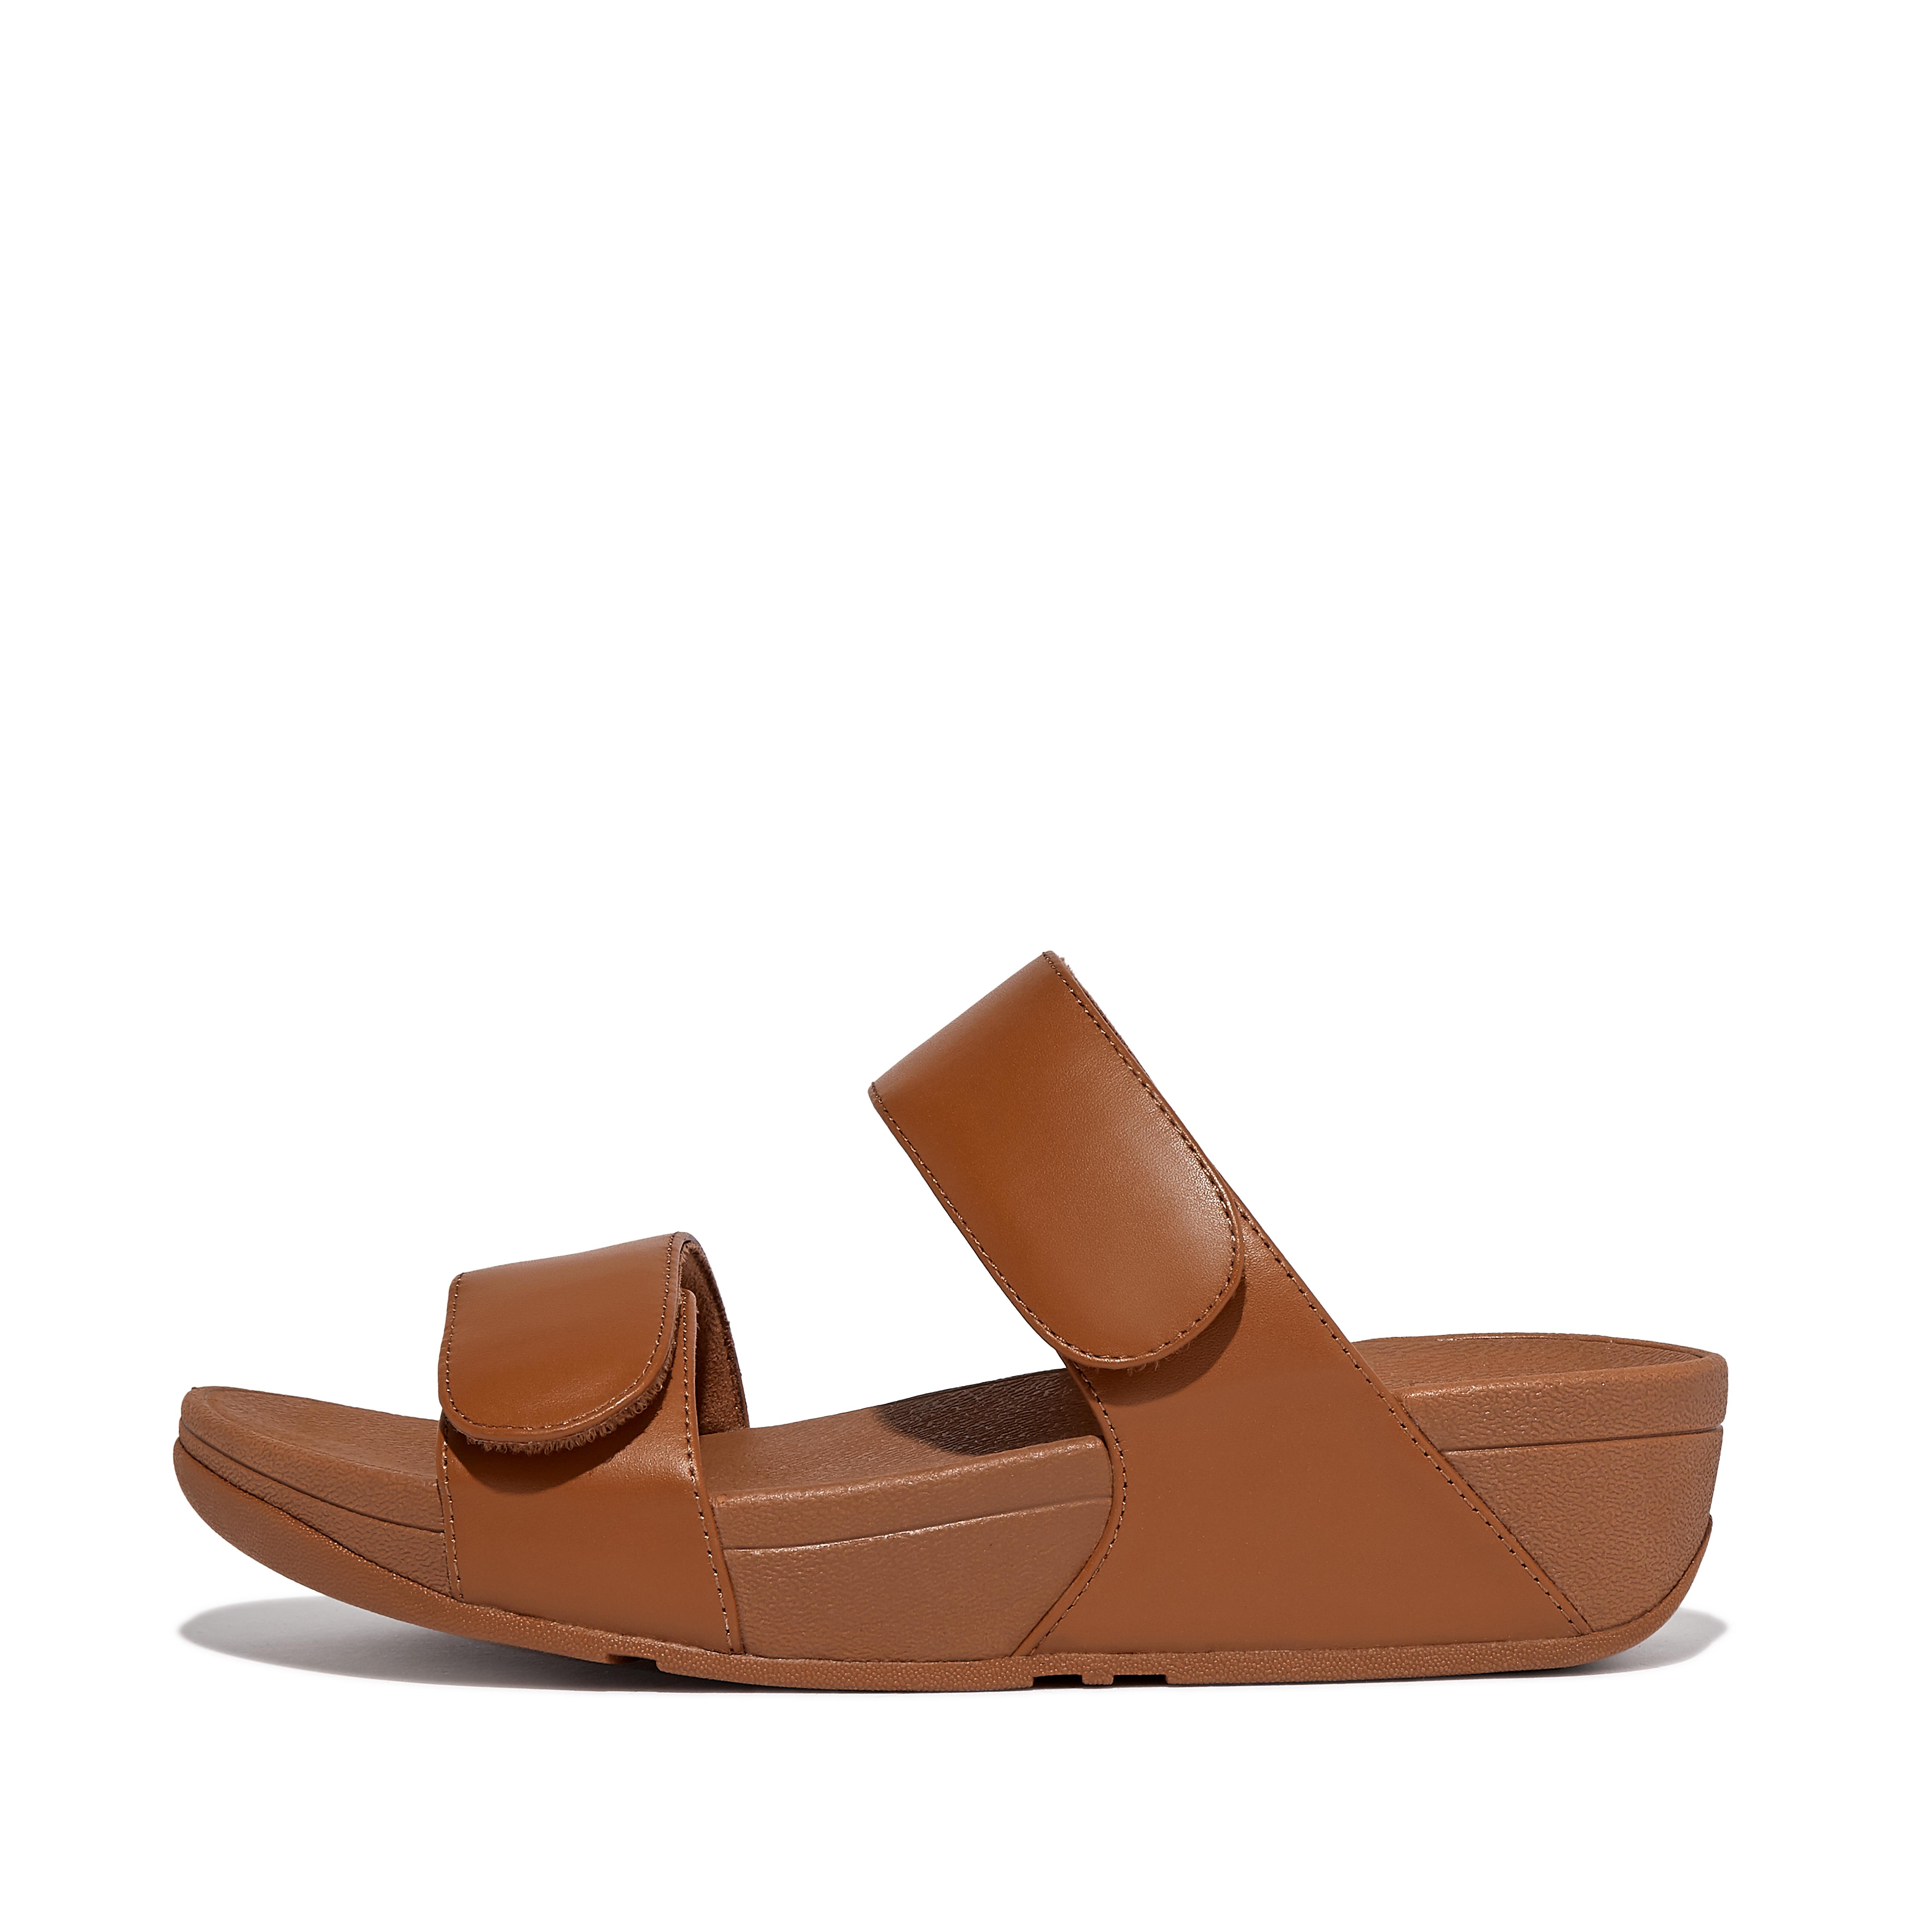 핏플랍 슬리퍼 Fitflop Adjustable Leather Slides,Light Tan